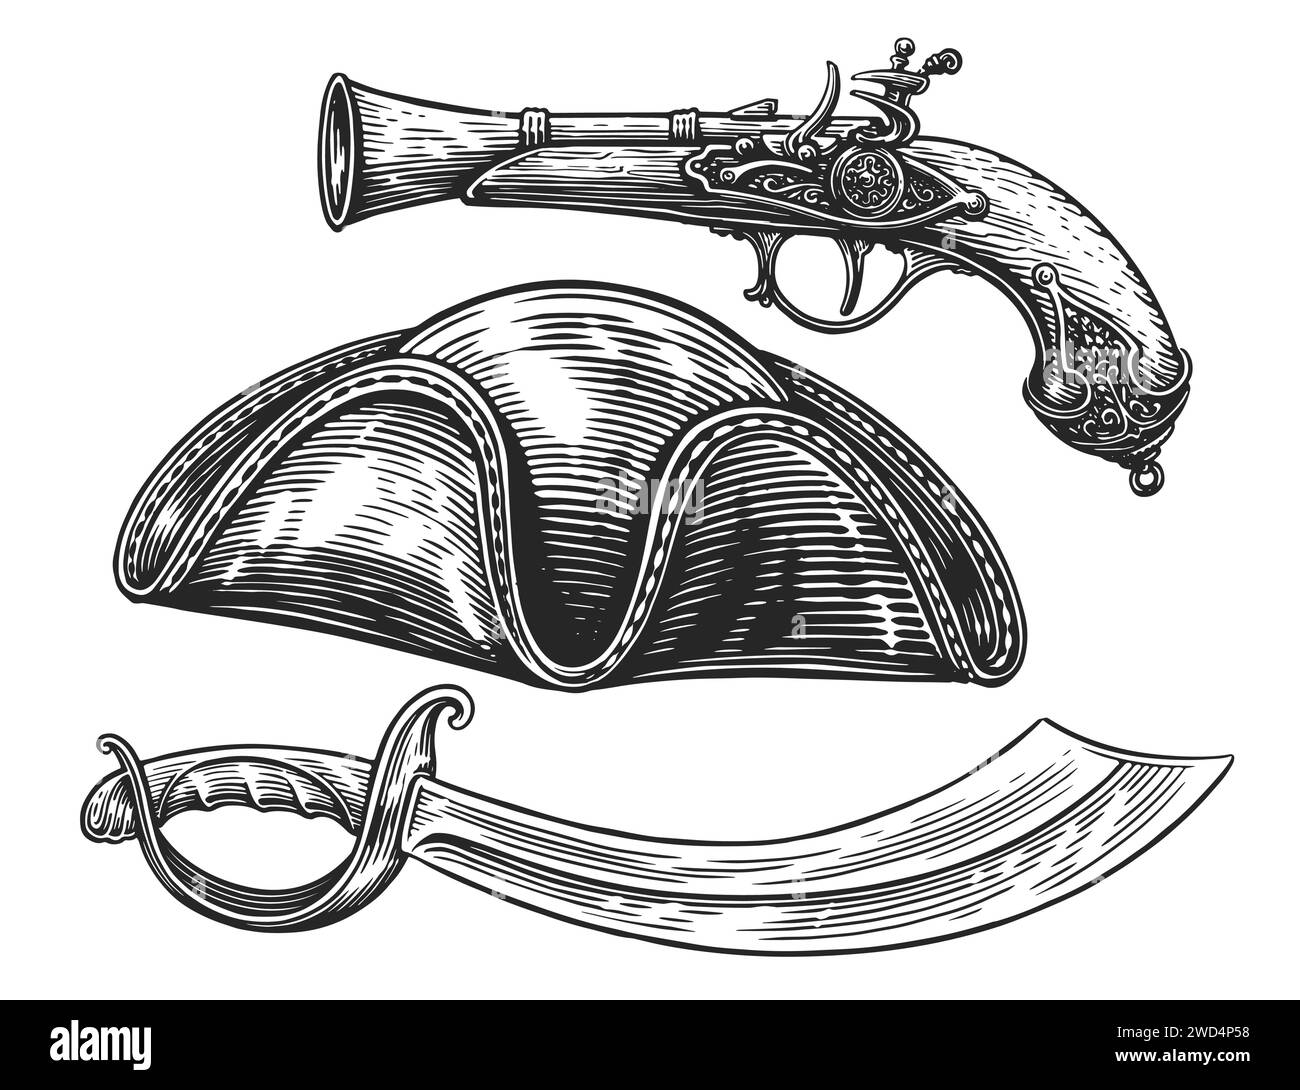 Pirate set. Saber, pistol, cocked hat. Hand drawn sketch vintage vector illustration Stock Vector